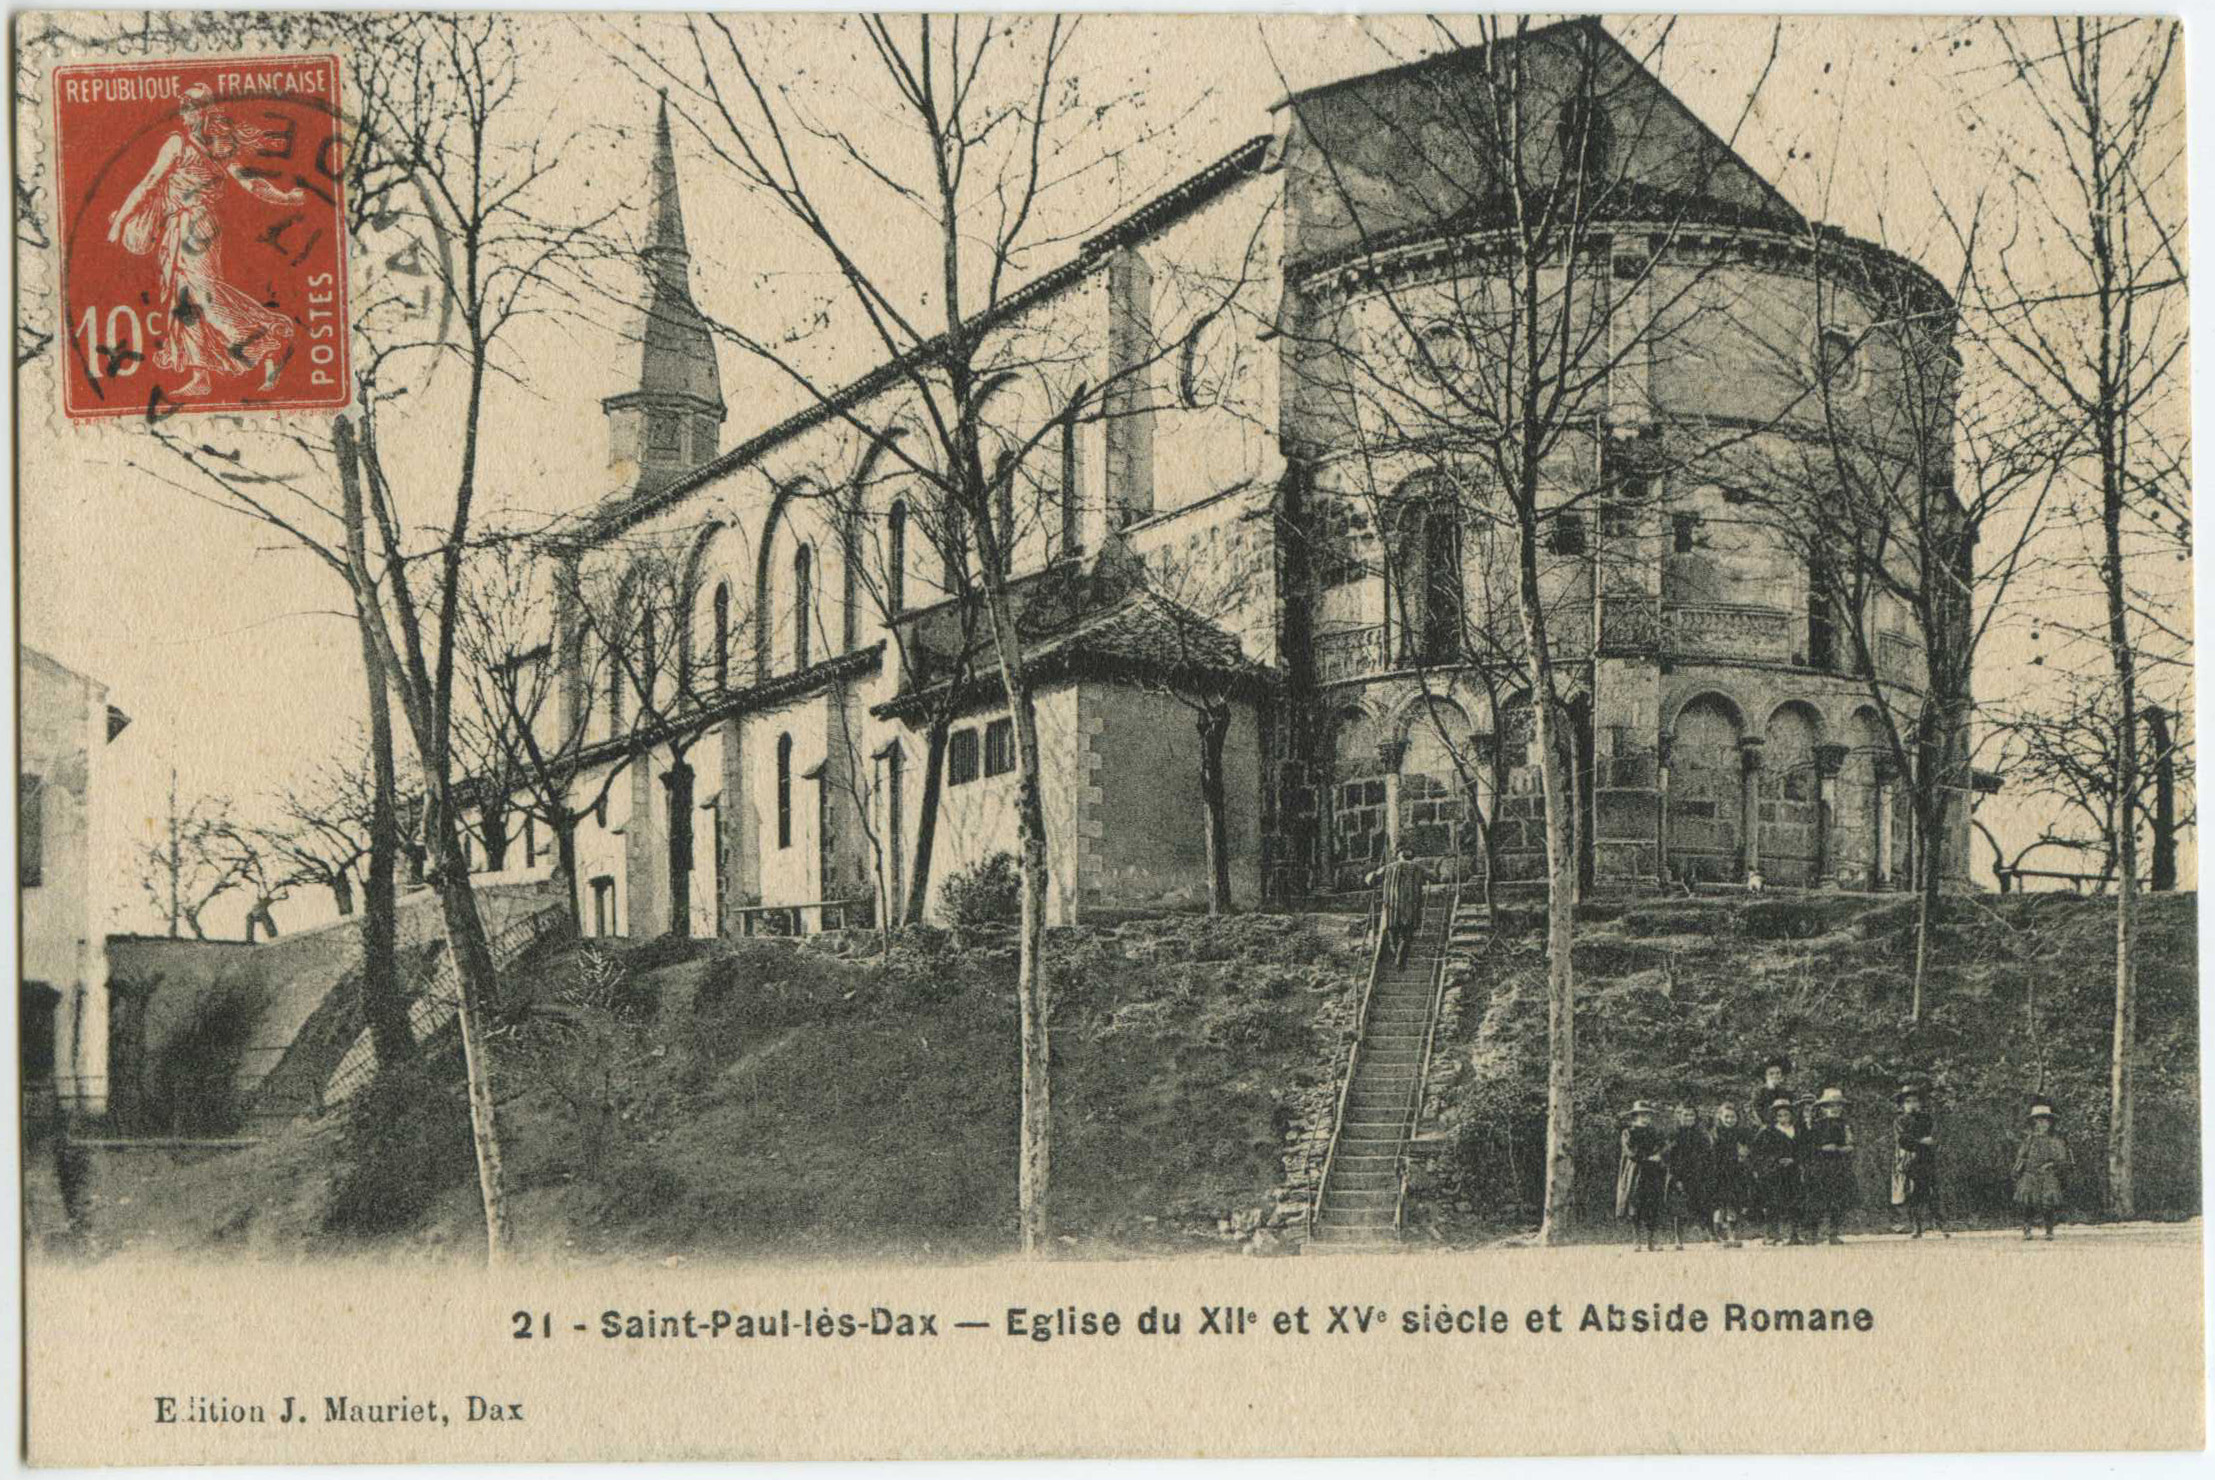 Saint-Paul-lès-Dax - Eglise du XII<sup>e</sup> et XV<sup>e</sup> siècle et Abside Romane